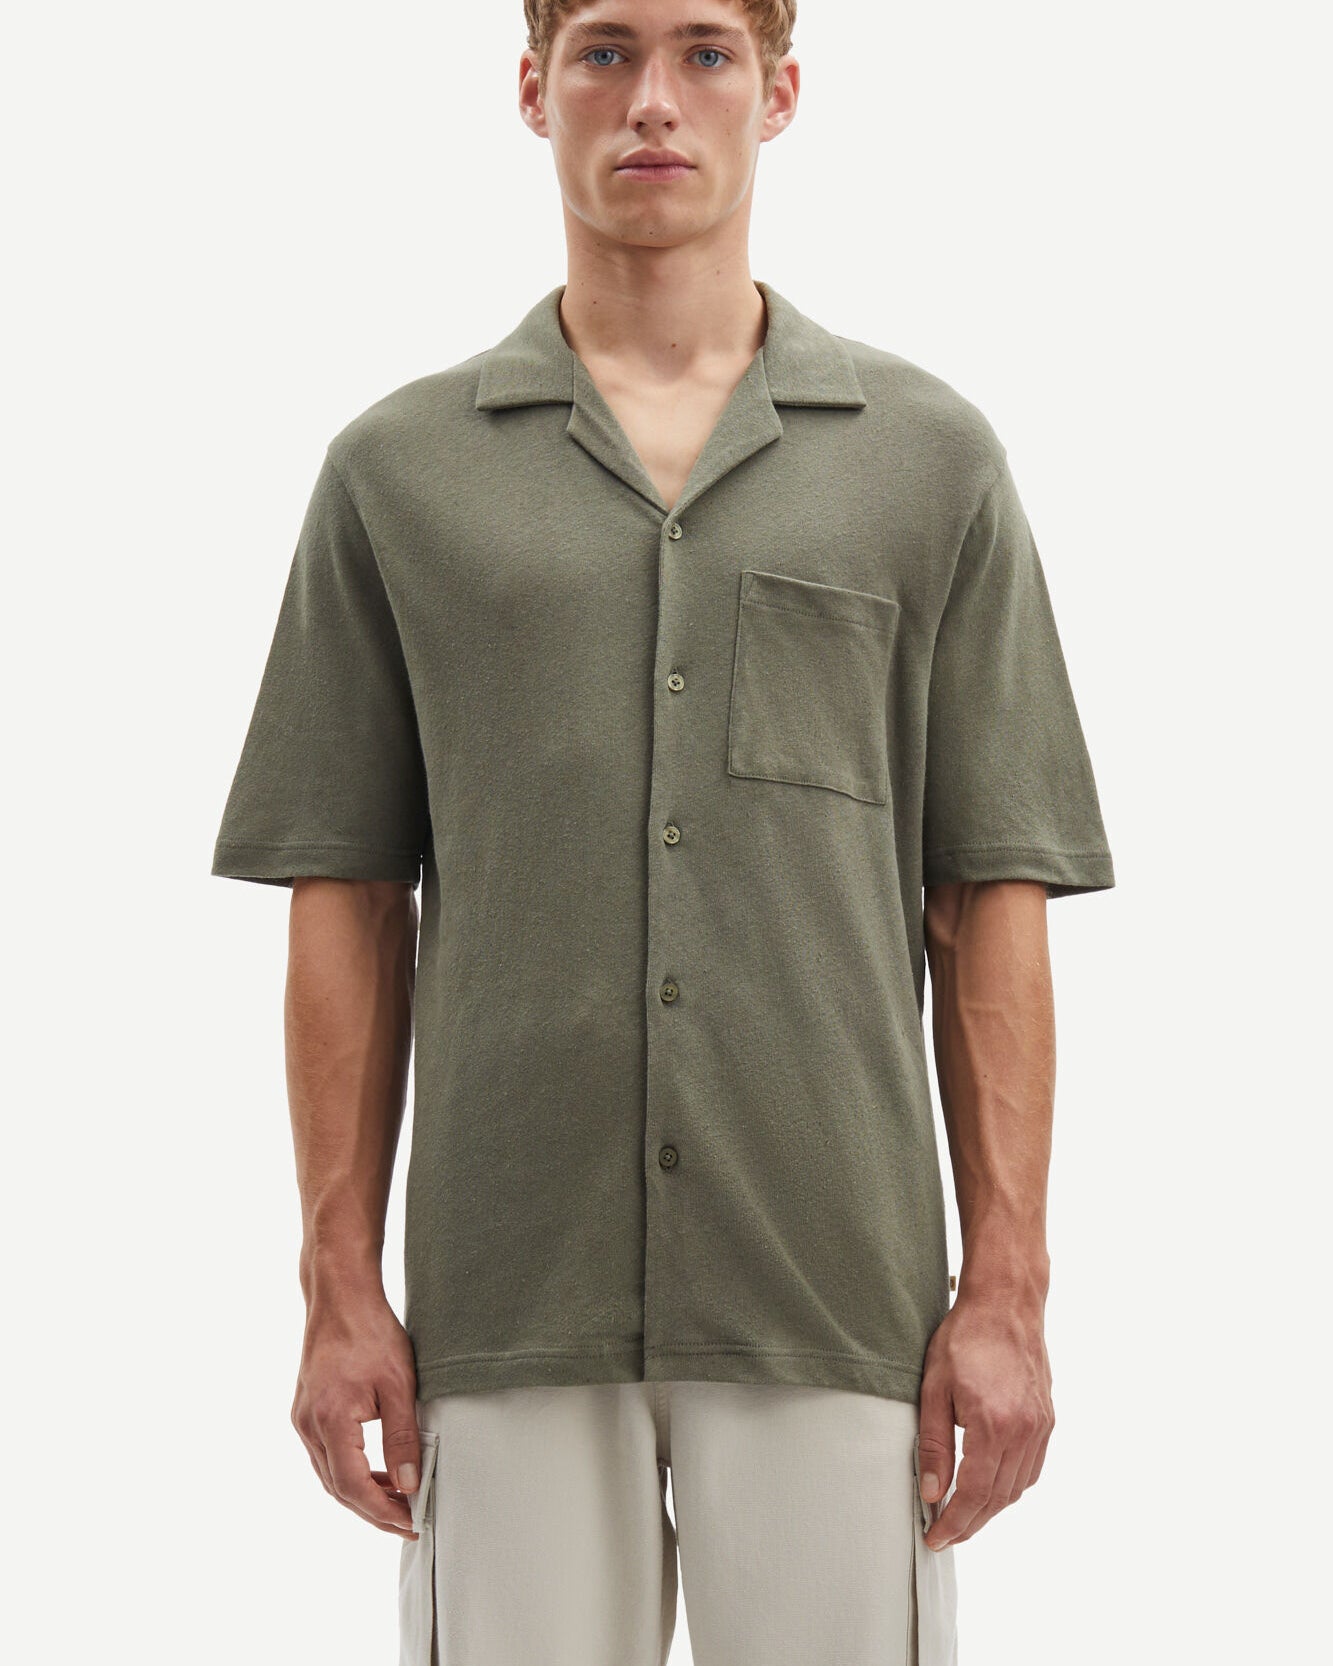 Samartin Shirt 15104 - Dusty Olive